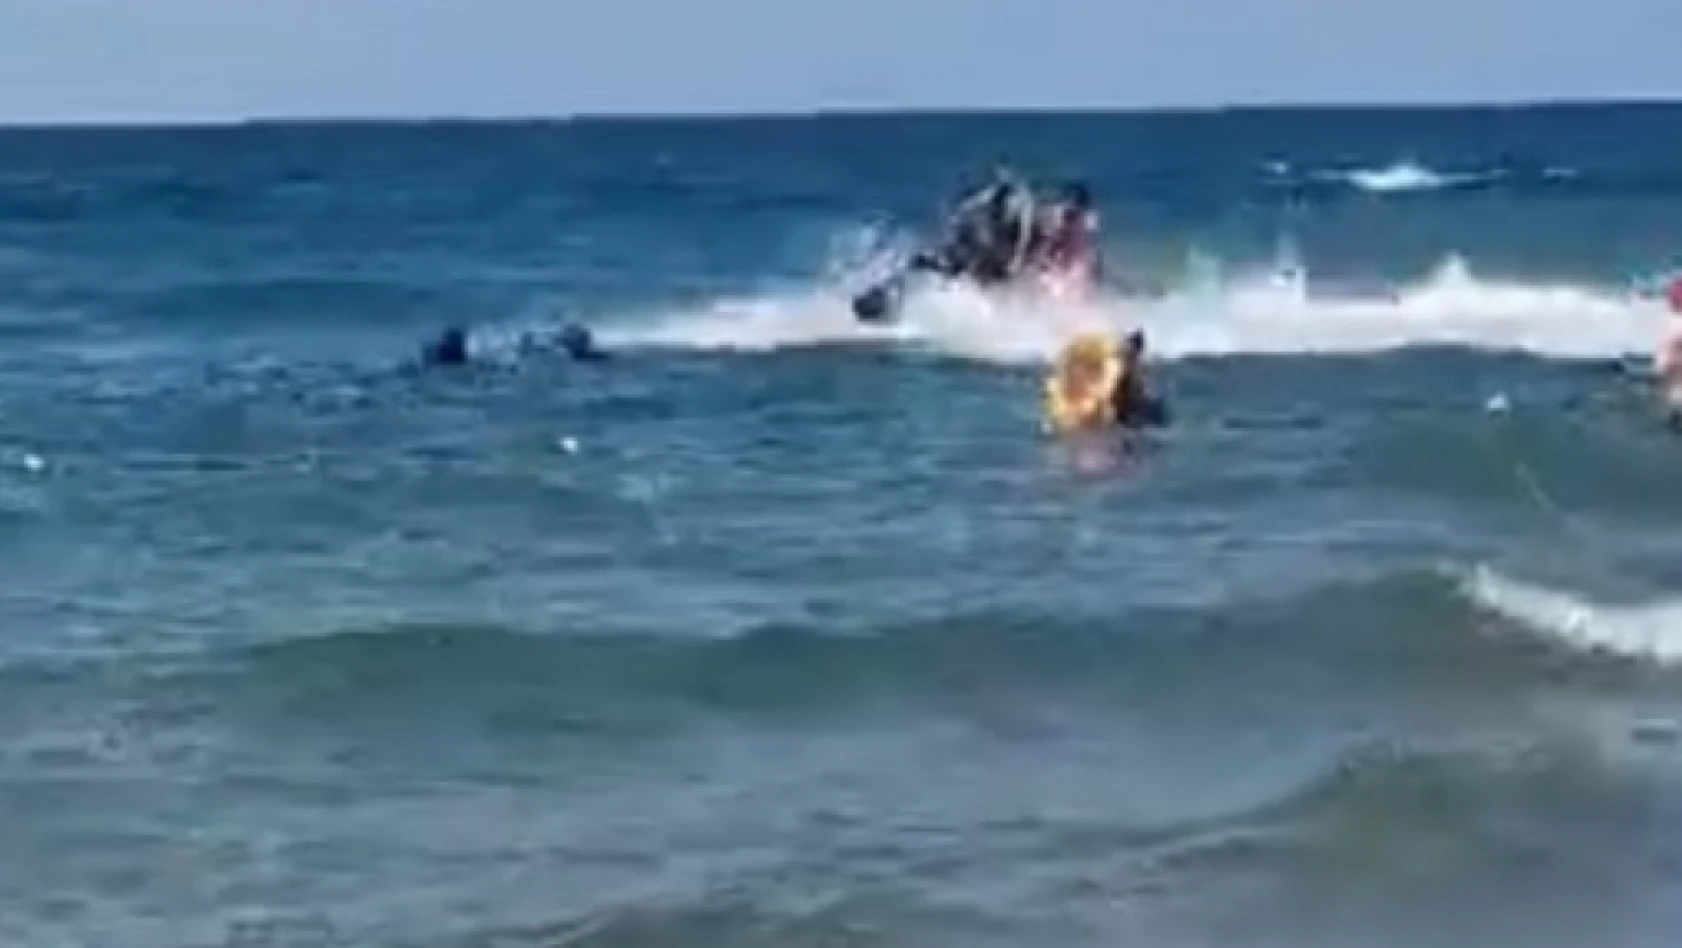 Kocaeli'de denizde can pazarı: Boğulma tehlikesi geçiren 4 kişi kurtarıldı